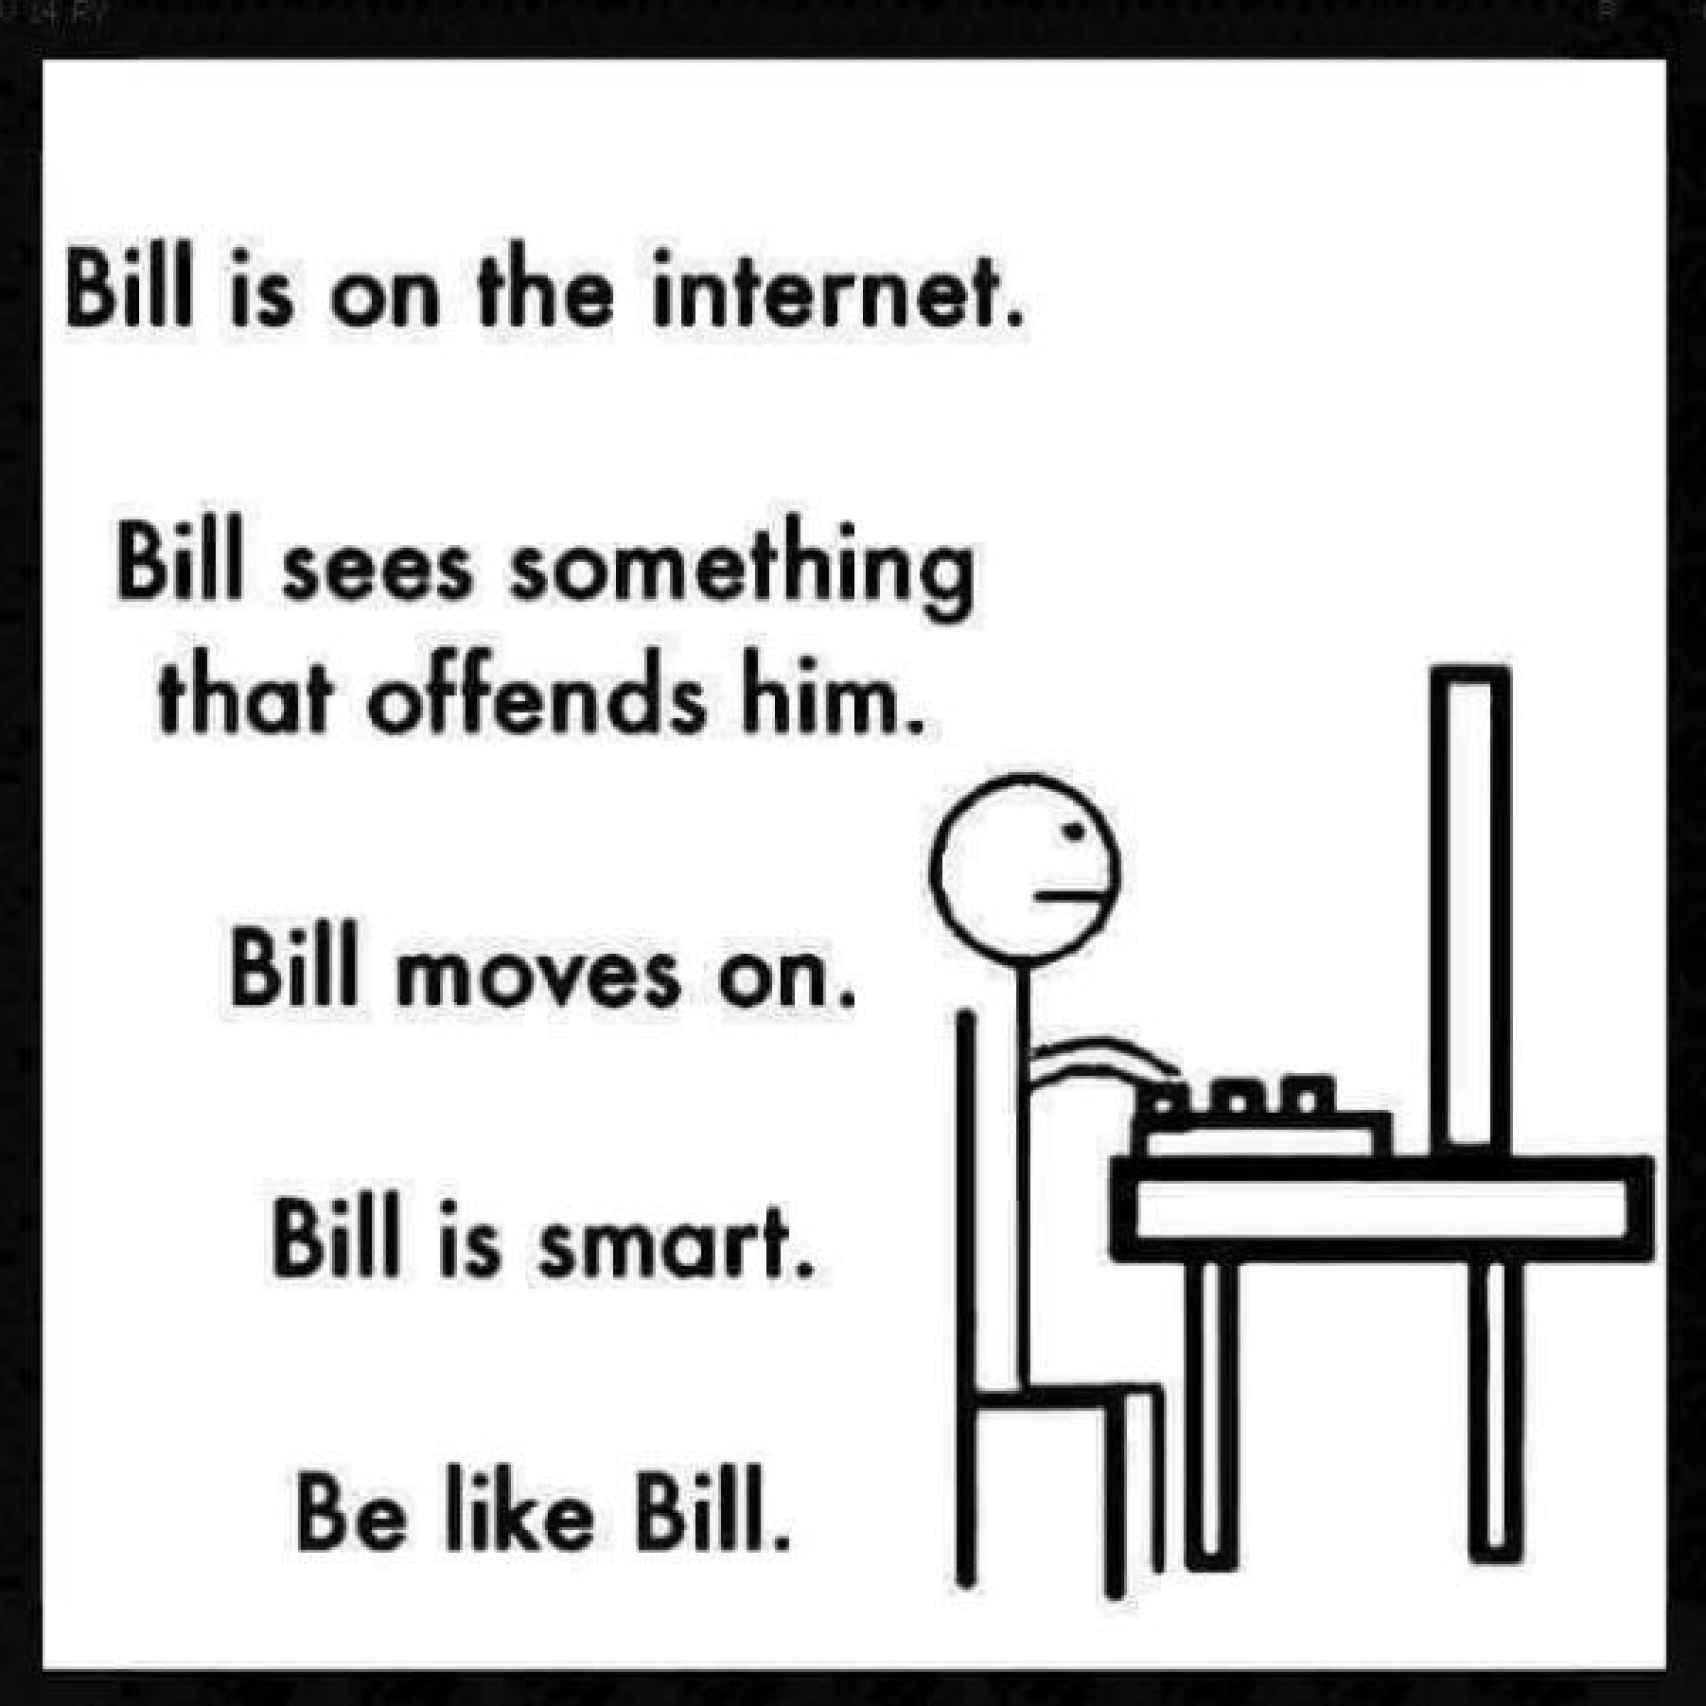 La primera encarnación de Bill en Reddit.